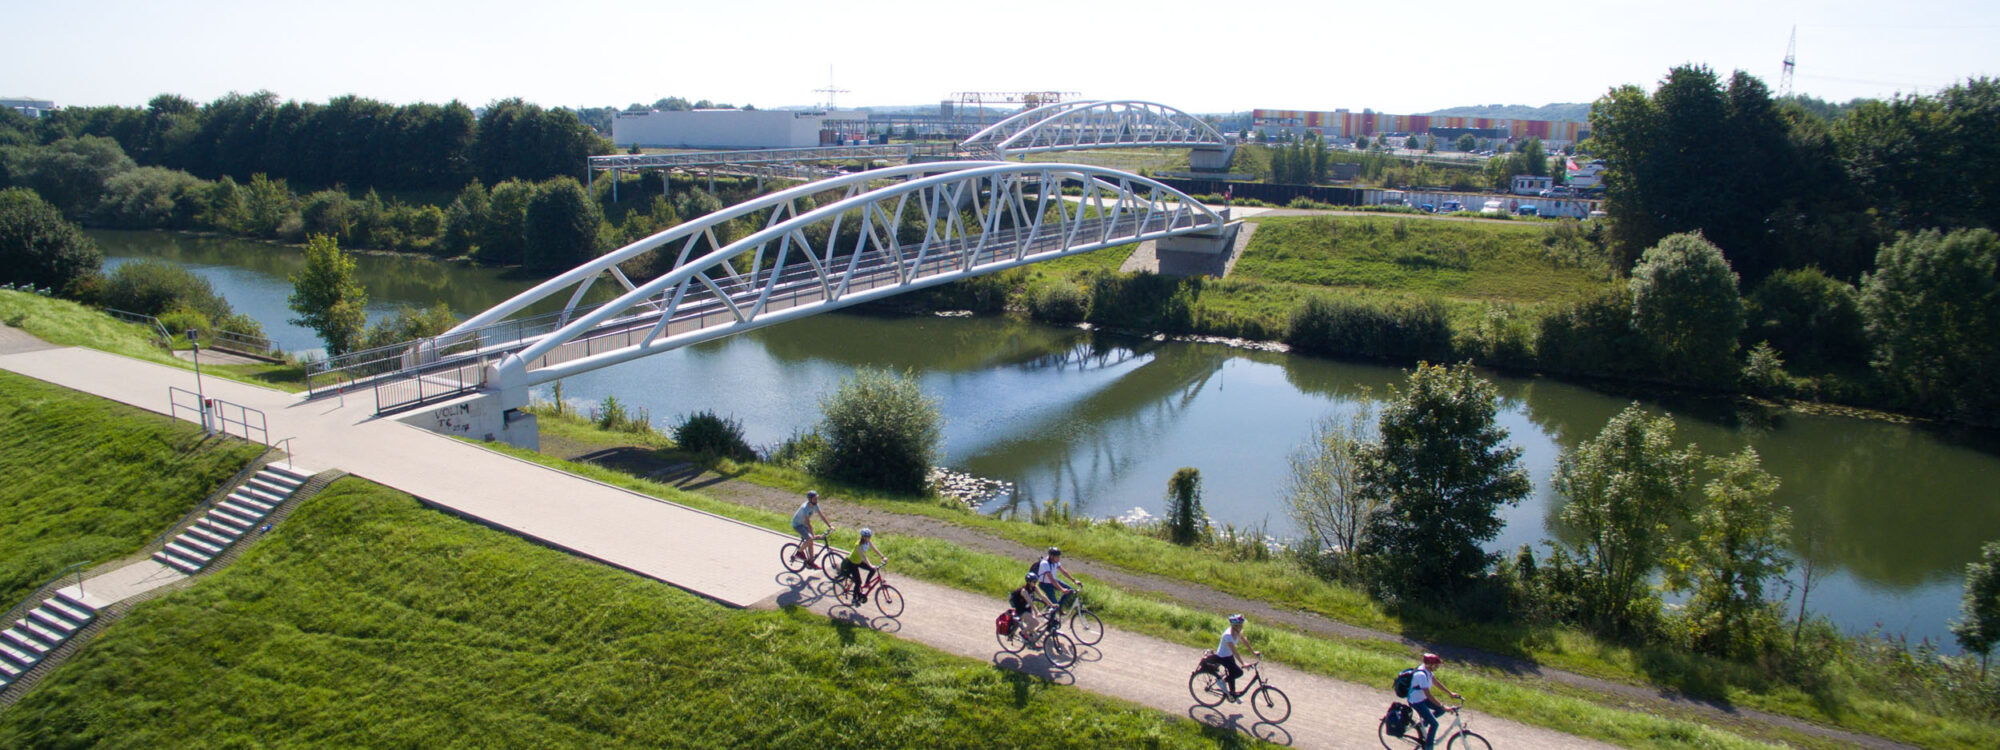 De foto toont fietsers op het fietspad op het Datteln-Hamm-kanaal in Hamm